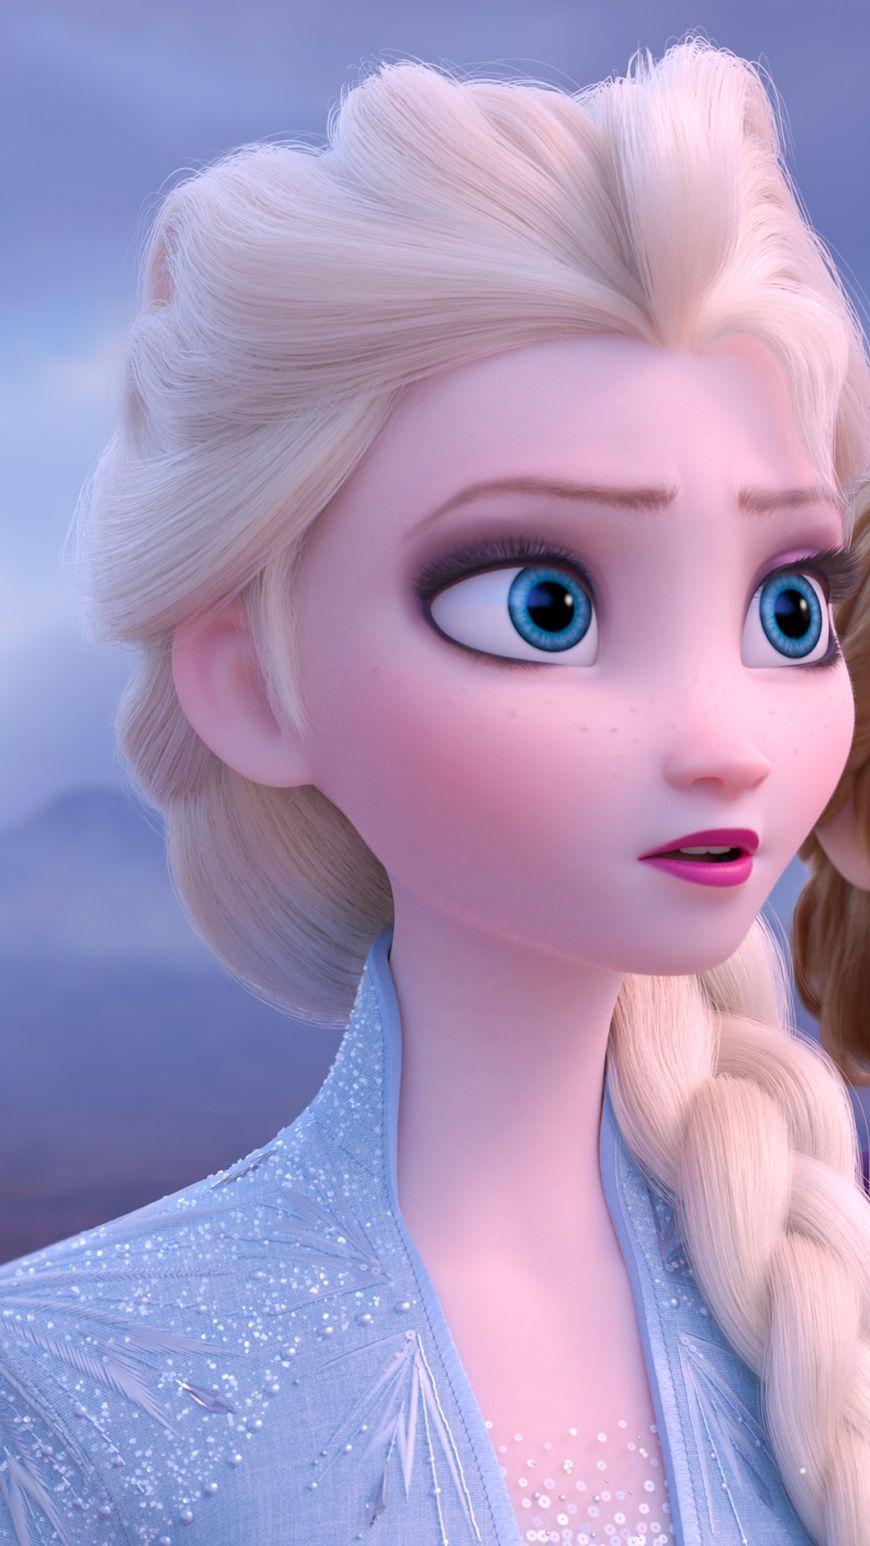 Disney Frozen 2 mobile phone wallpaper. Disney princess